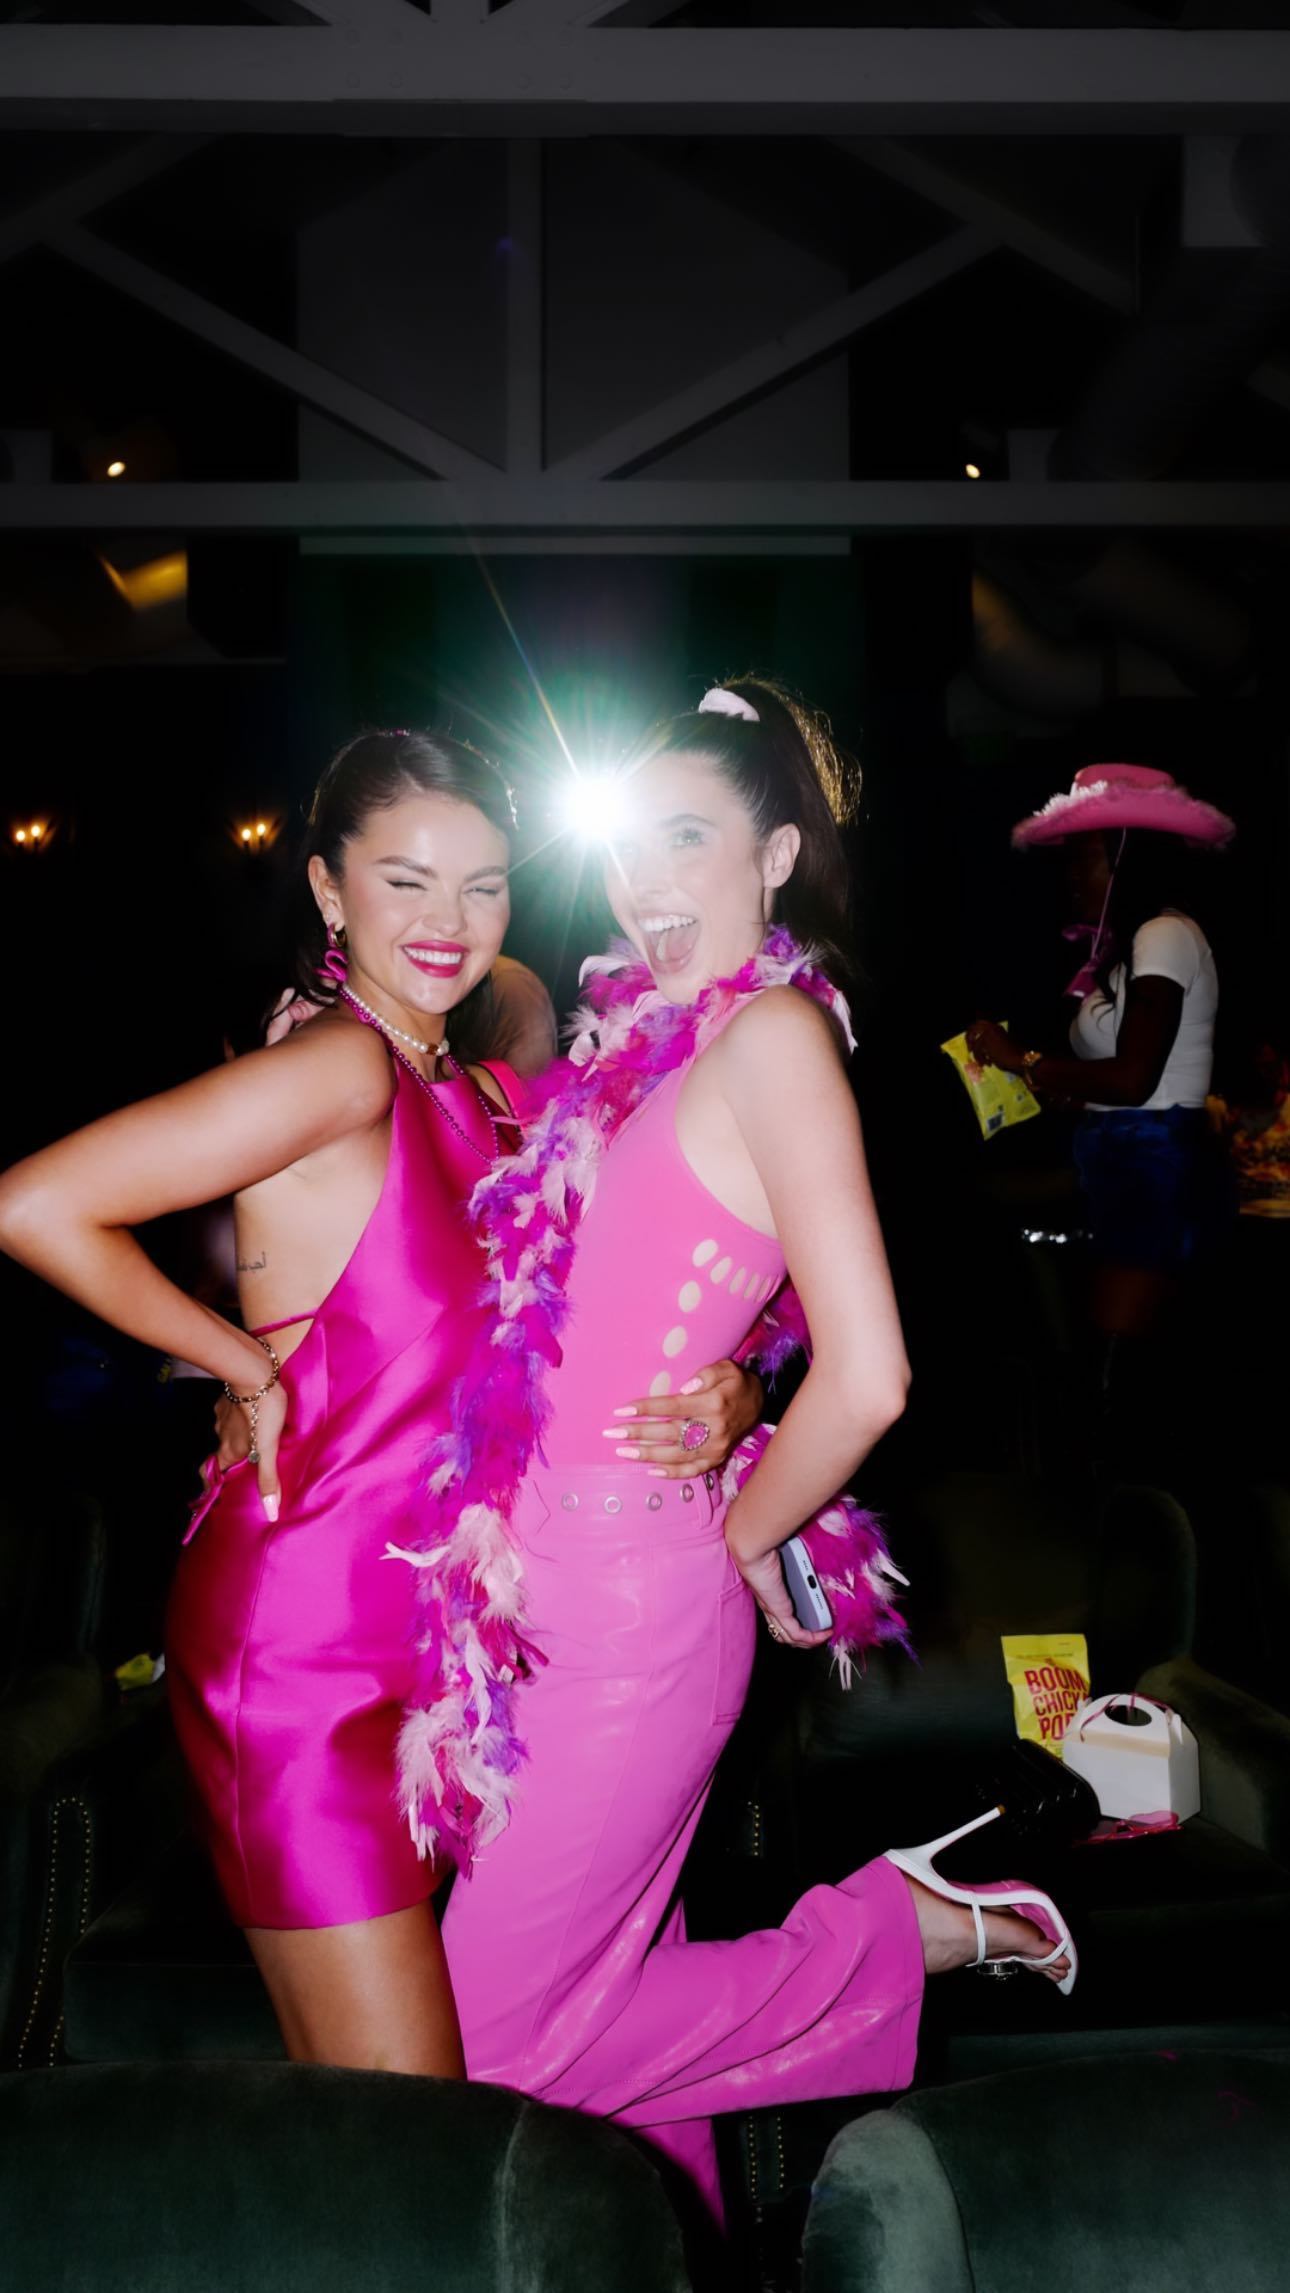 Photos n°23 : Selena Gomez Rocks the Boat in a Pink Bikini!